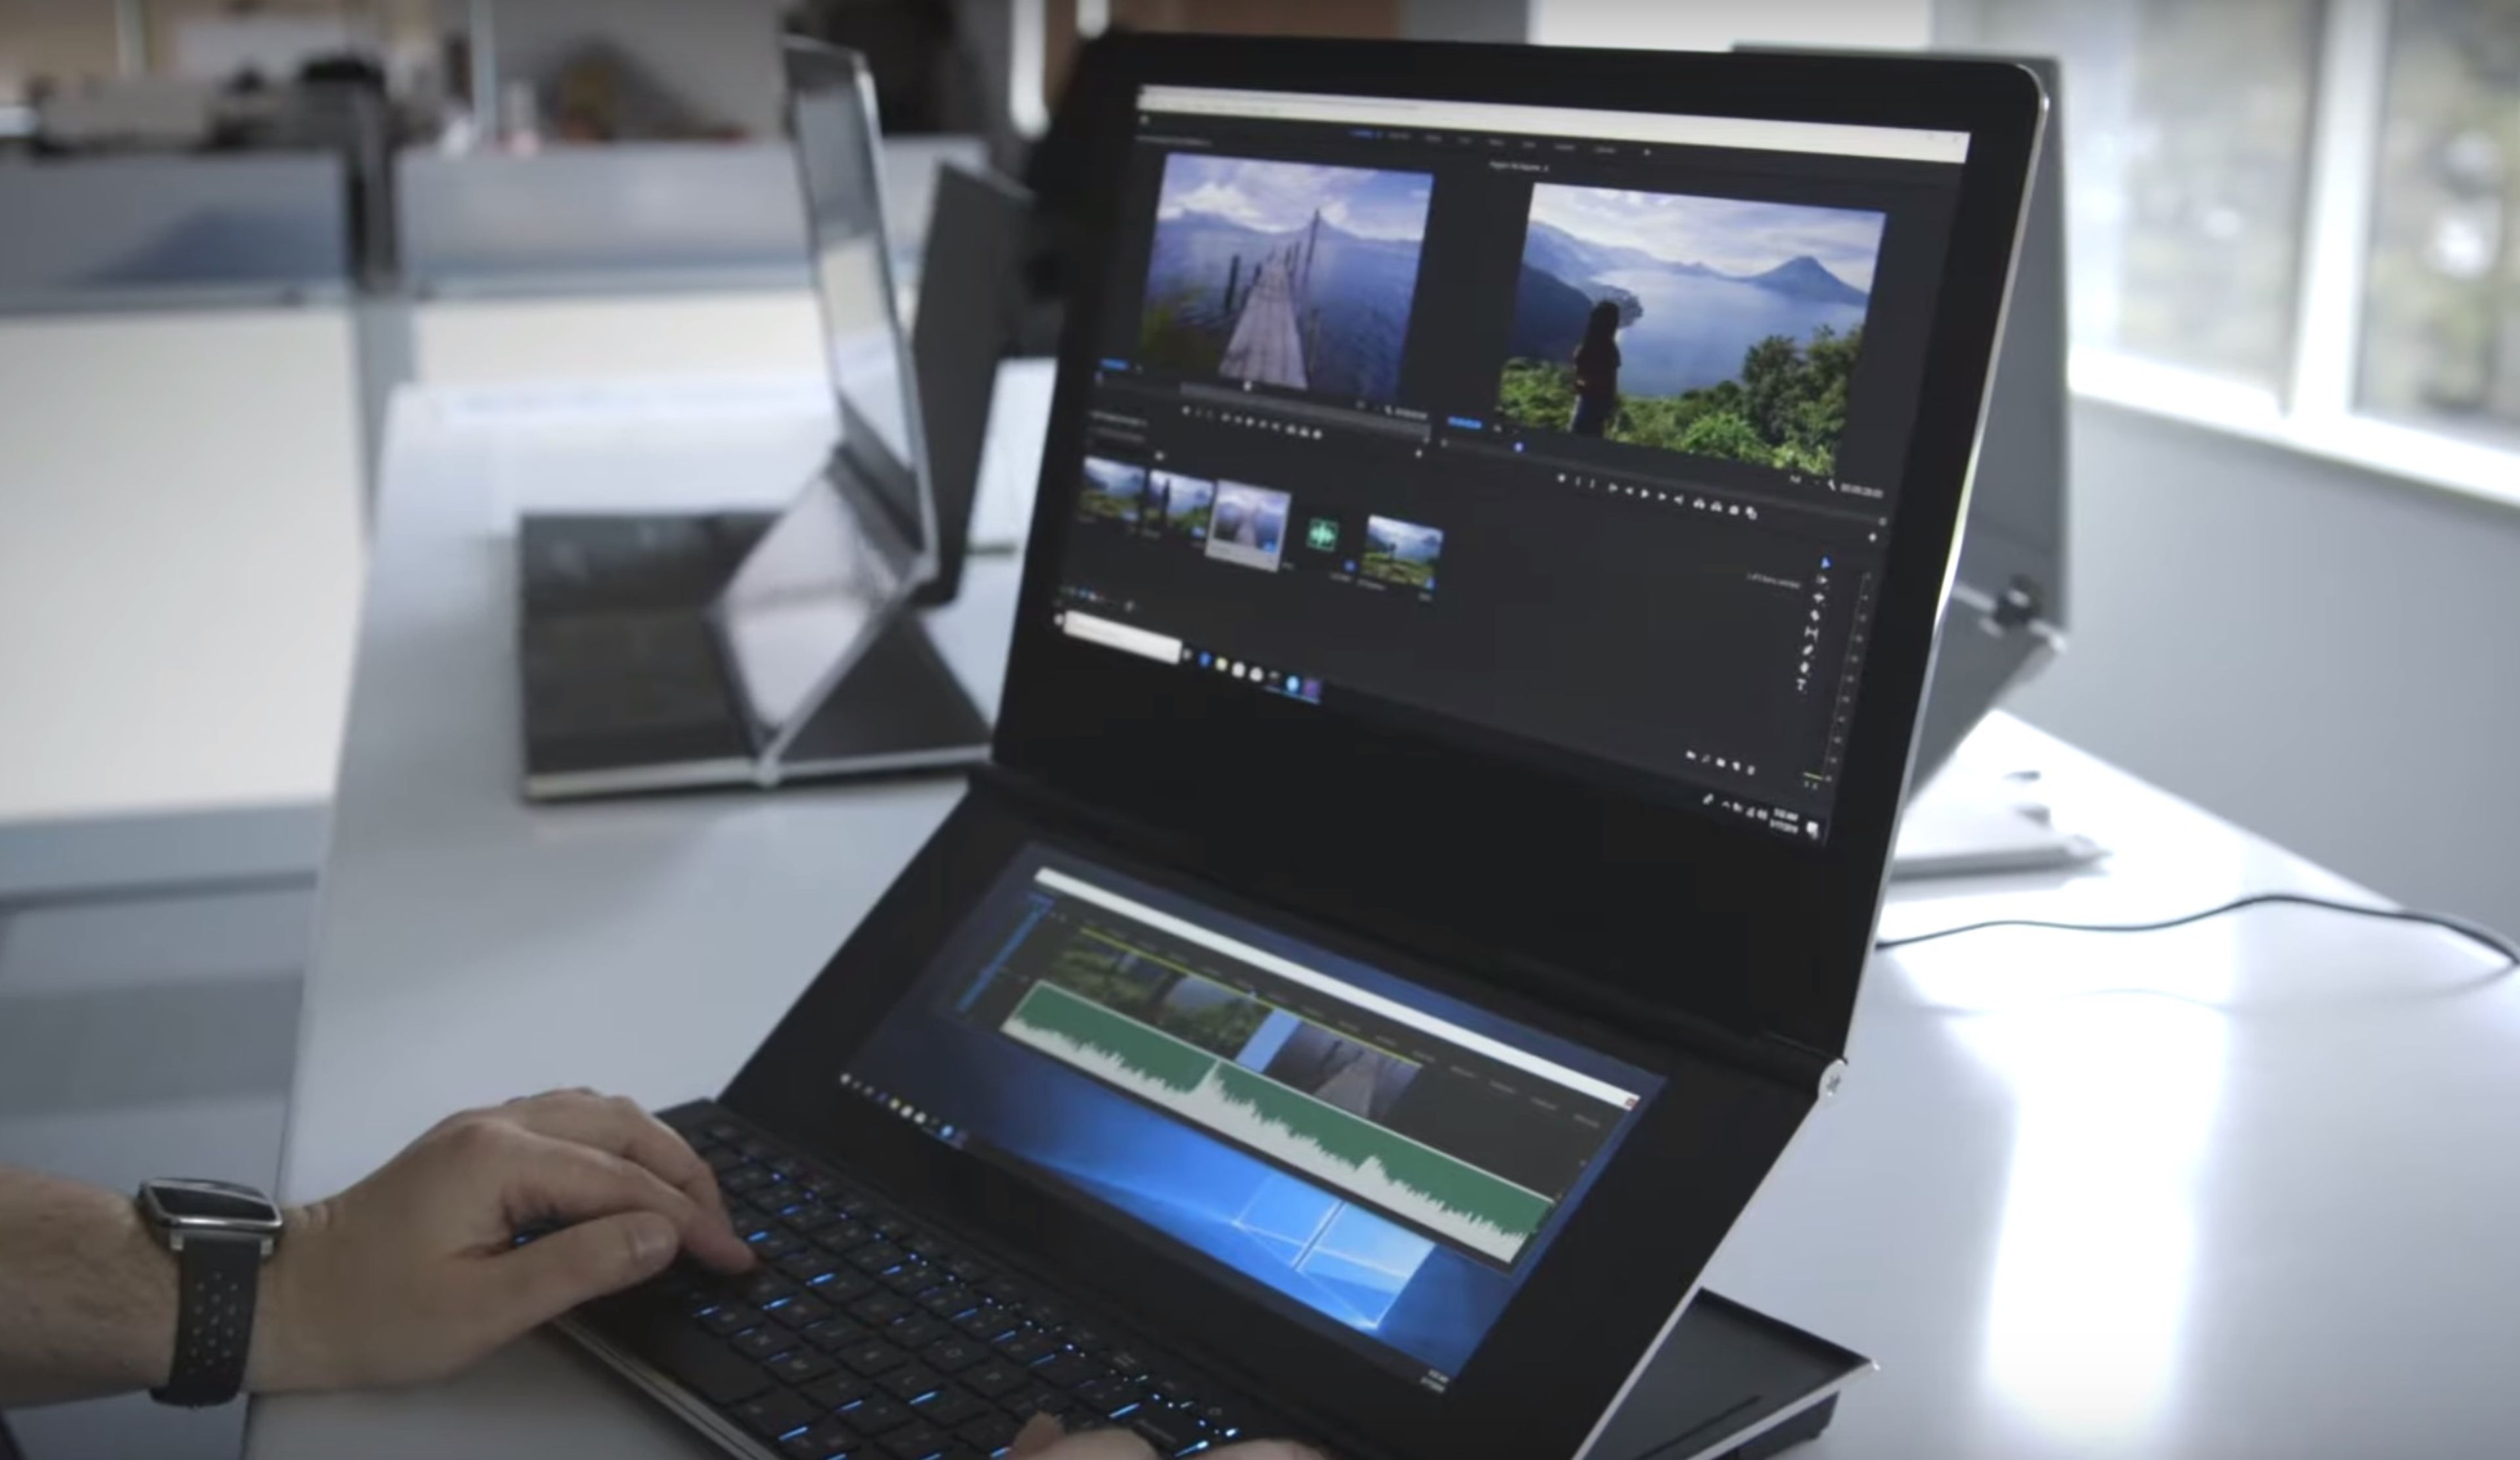 Así es el concepto de Intel que muestra un ordenador portátil con una segunda pantalla en formato desplegable.